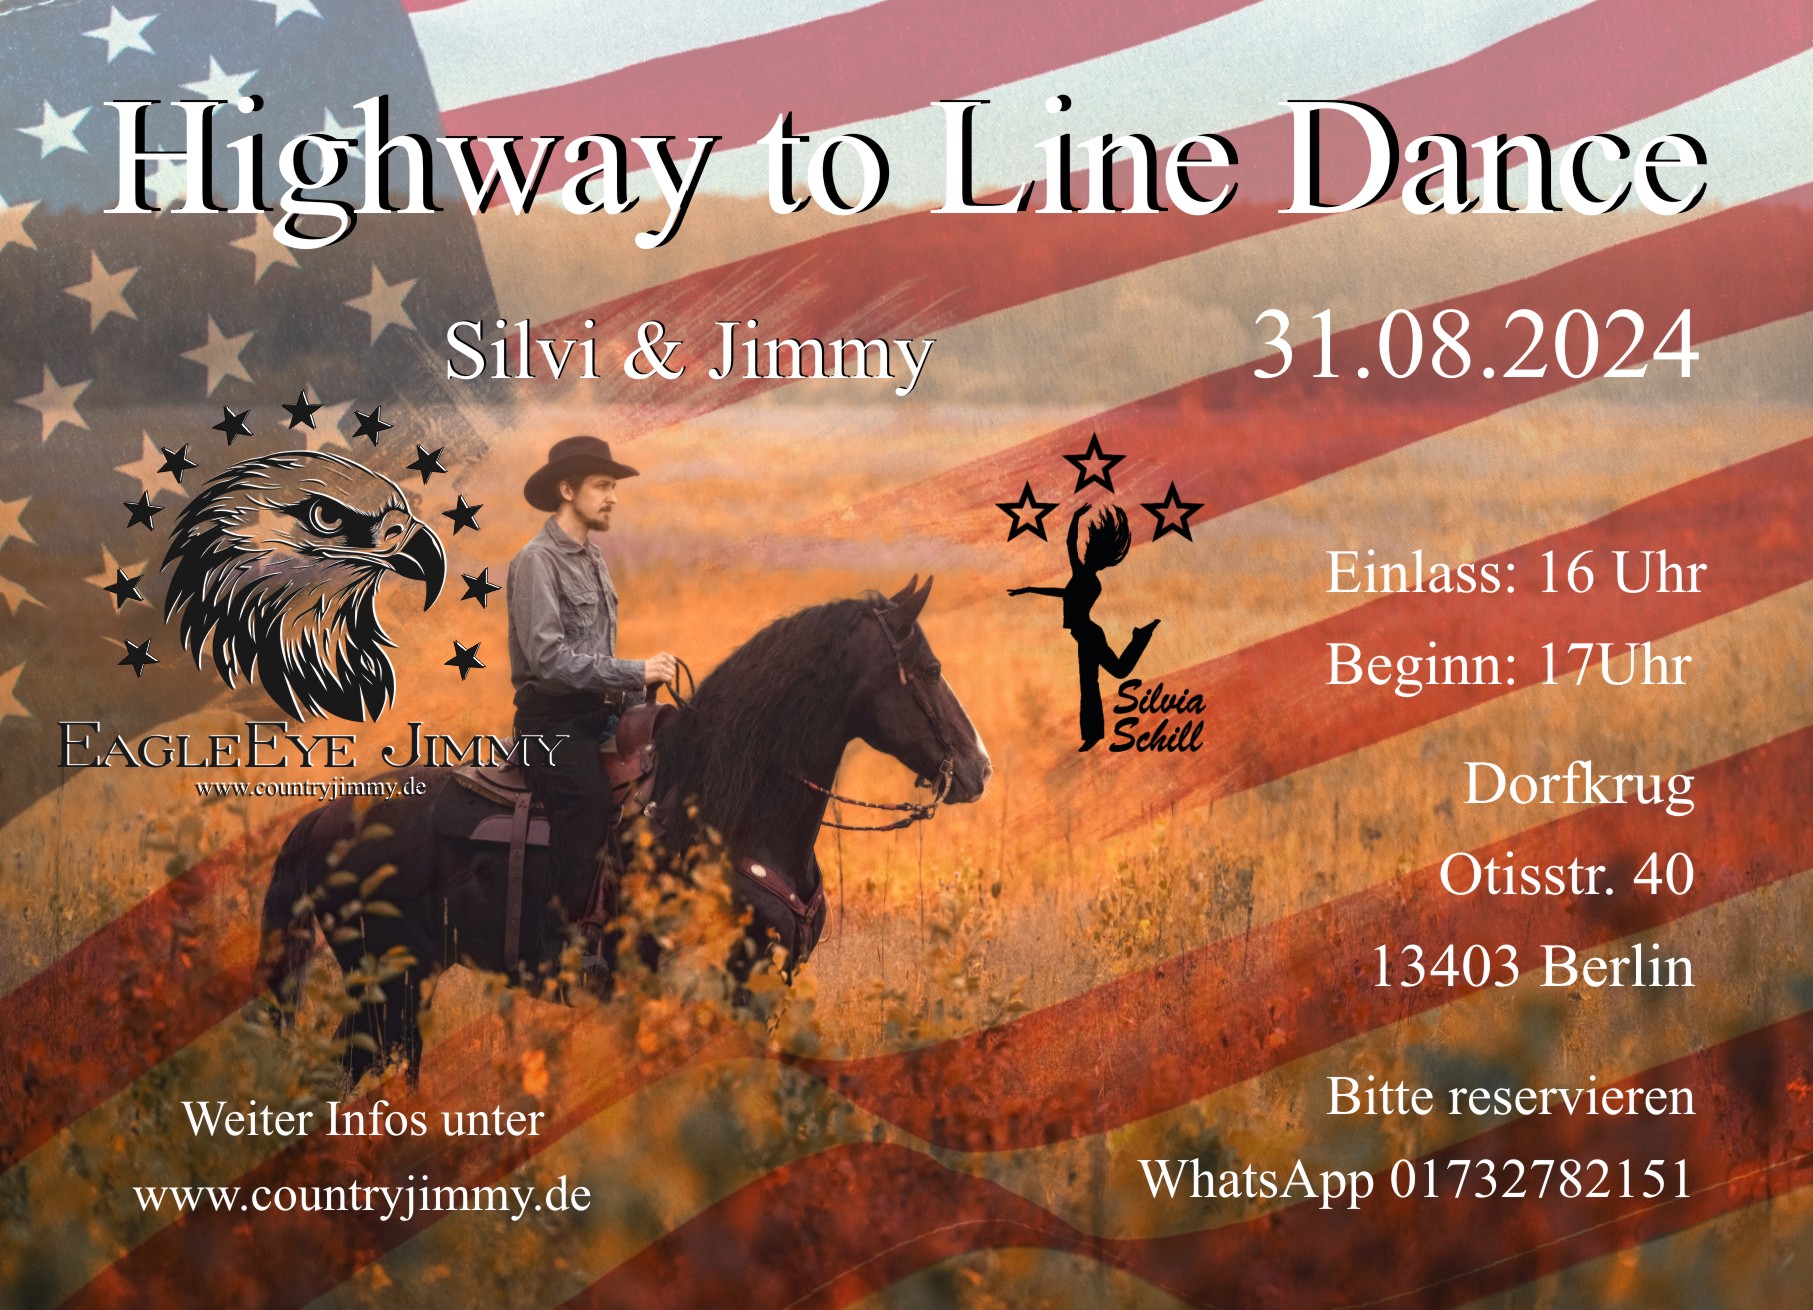 Highway to Line Dance